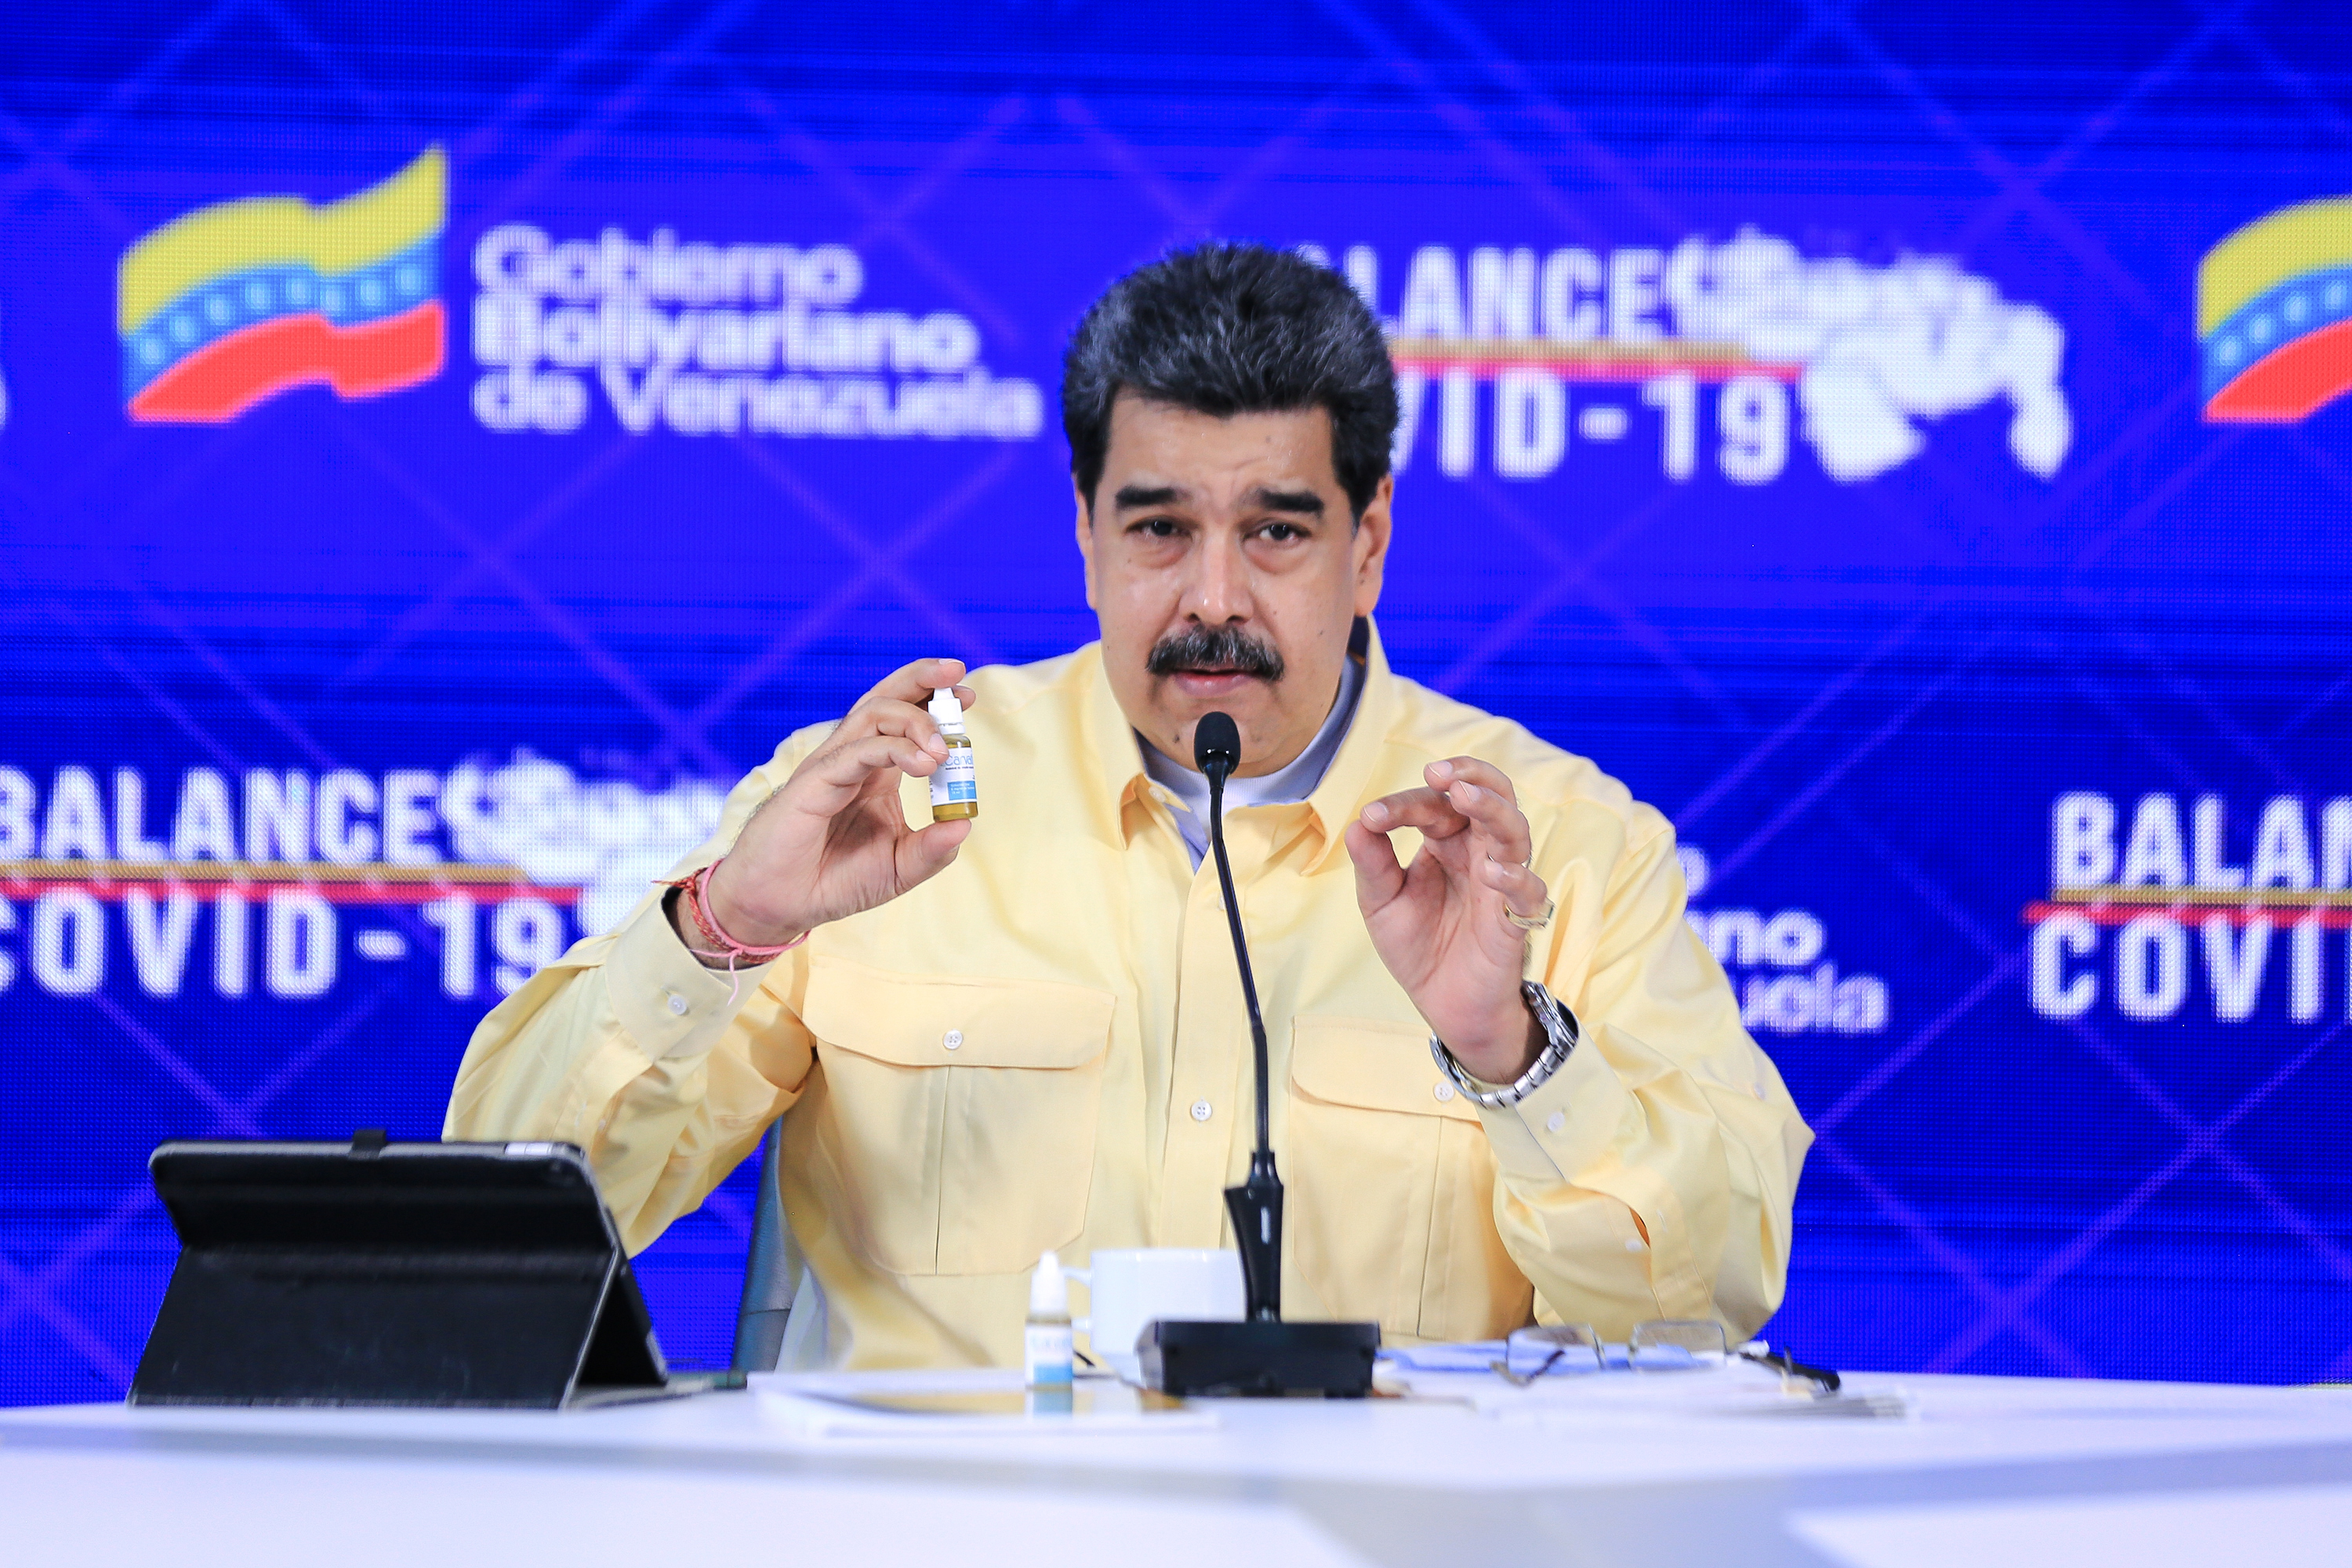 La historia oculta detrás de las gotas milagrosas que Maduro anunció como cura contra el coronavirus